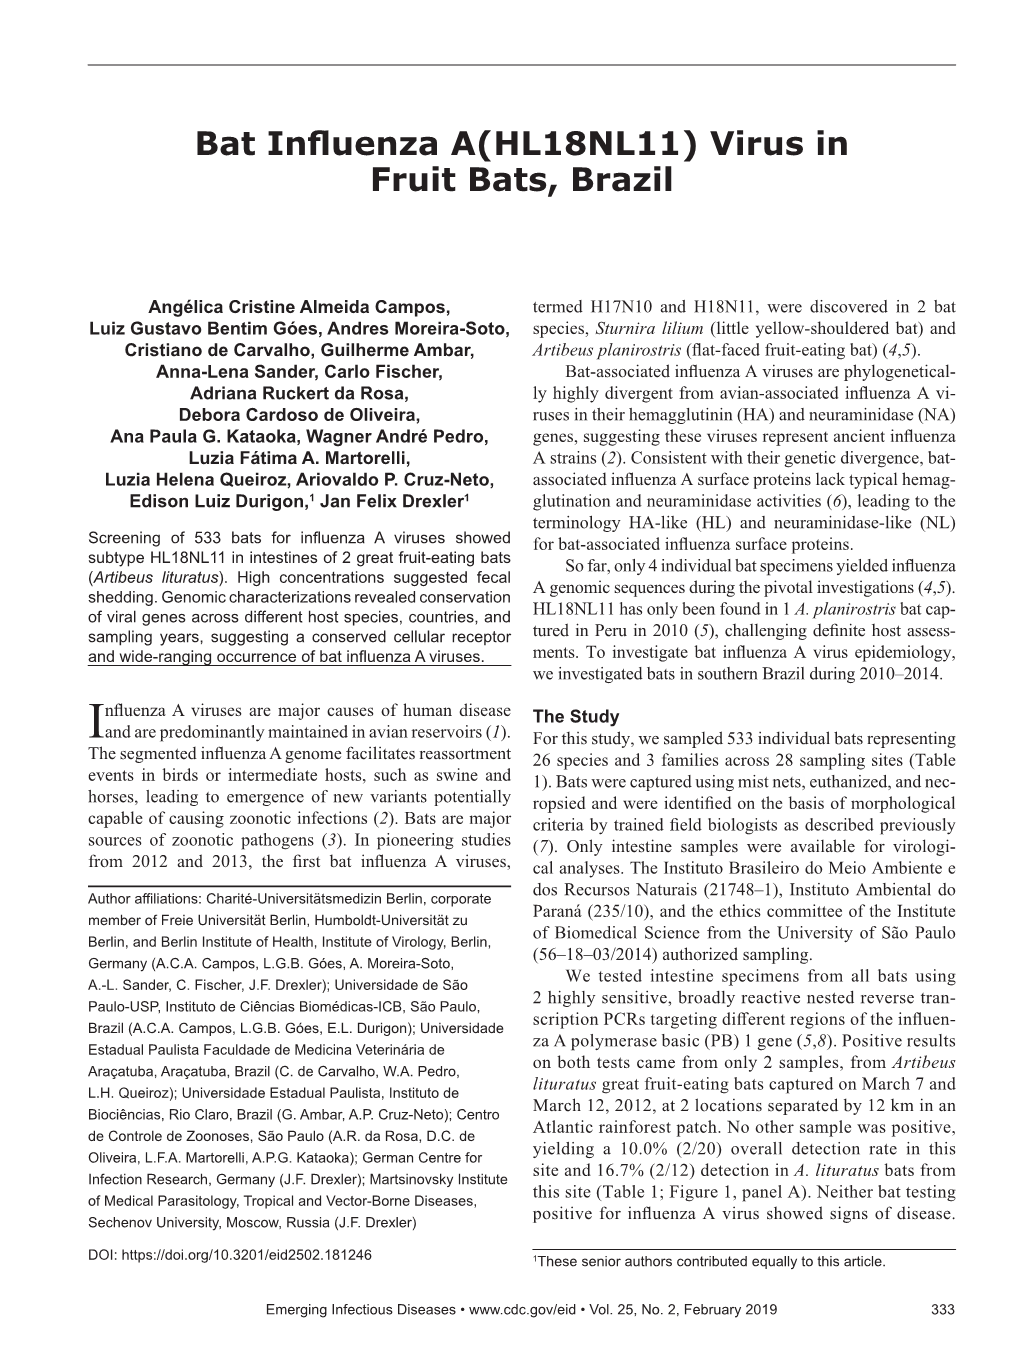 Bat Influenza A(HL18NL11) Virus in Fruit Bats, Brazil